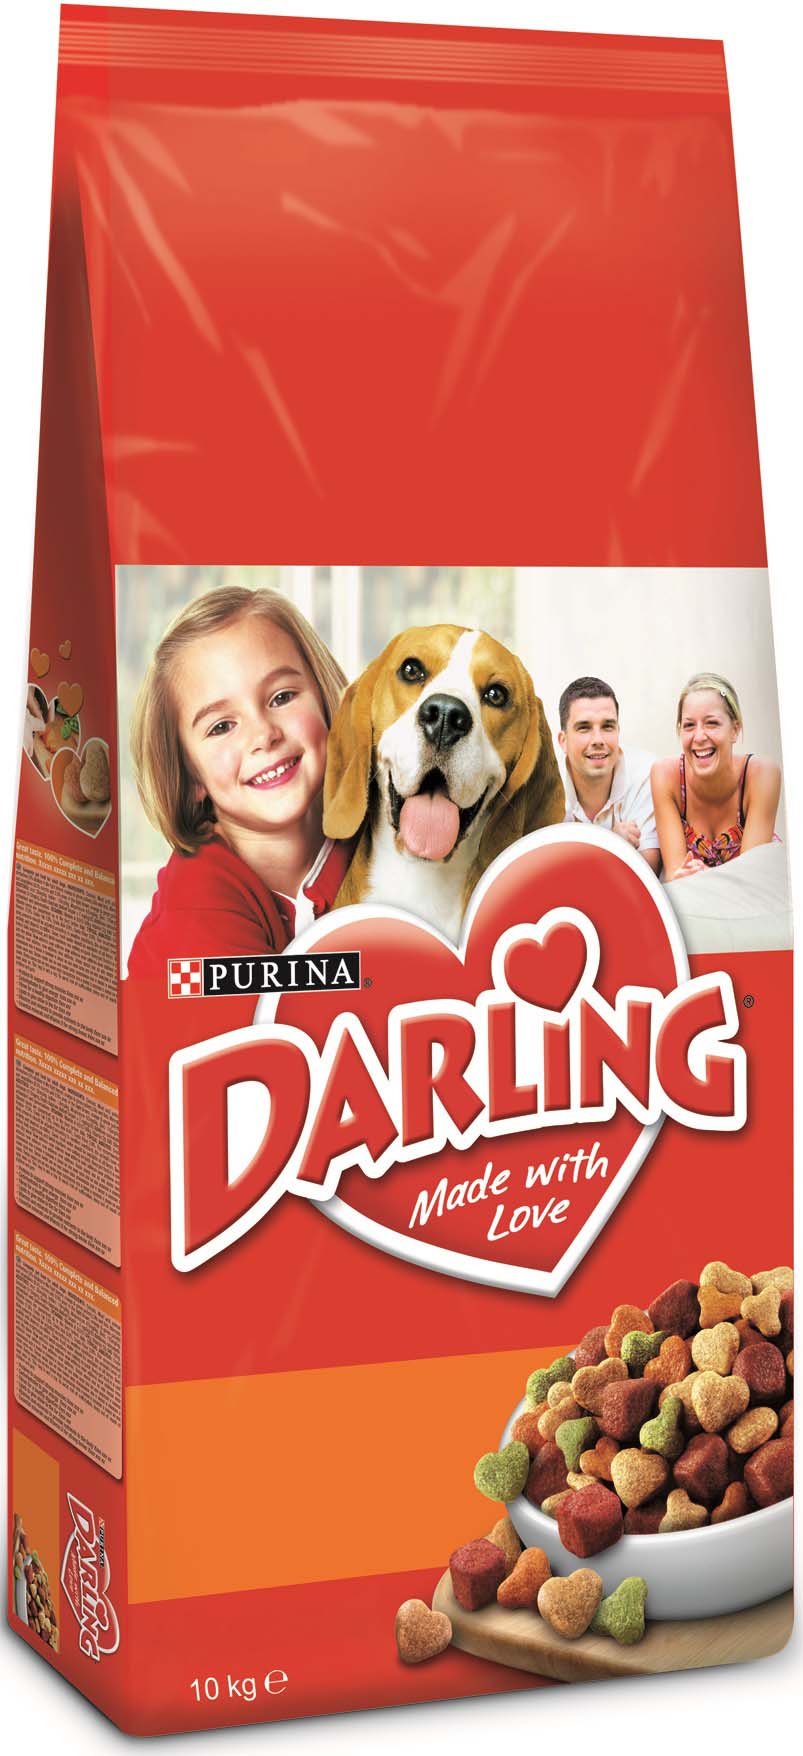 Darling hrană uscată pentru câini adulţi, cu pasăre şi legume